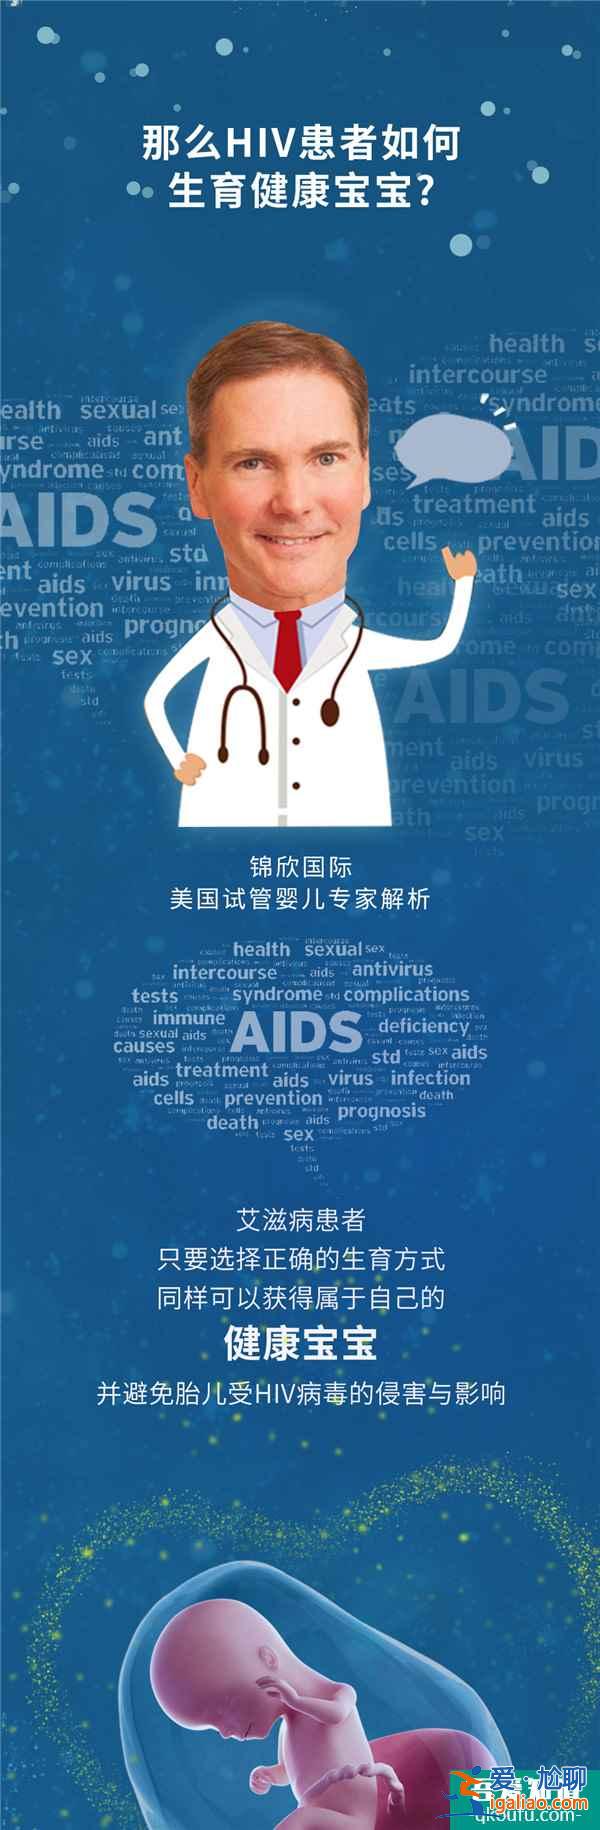 HIV的生育梦——世界艾滋病日 消除歧视 安全孕育？